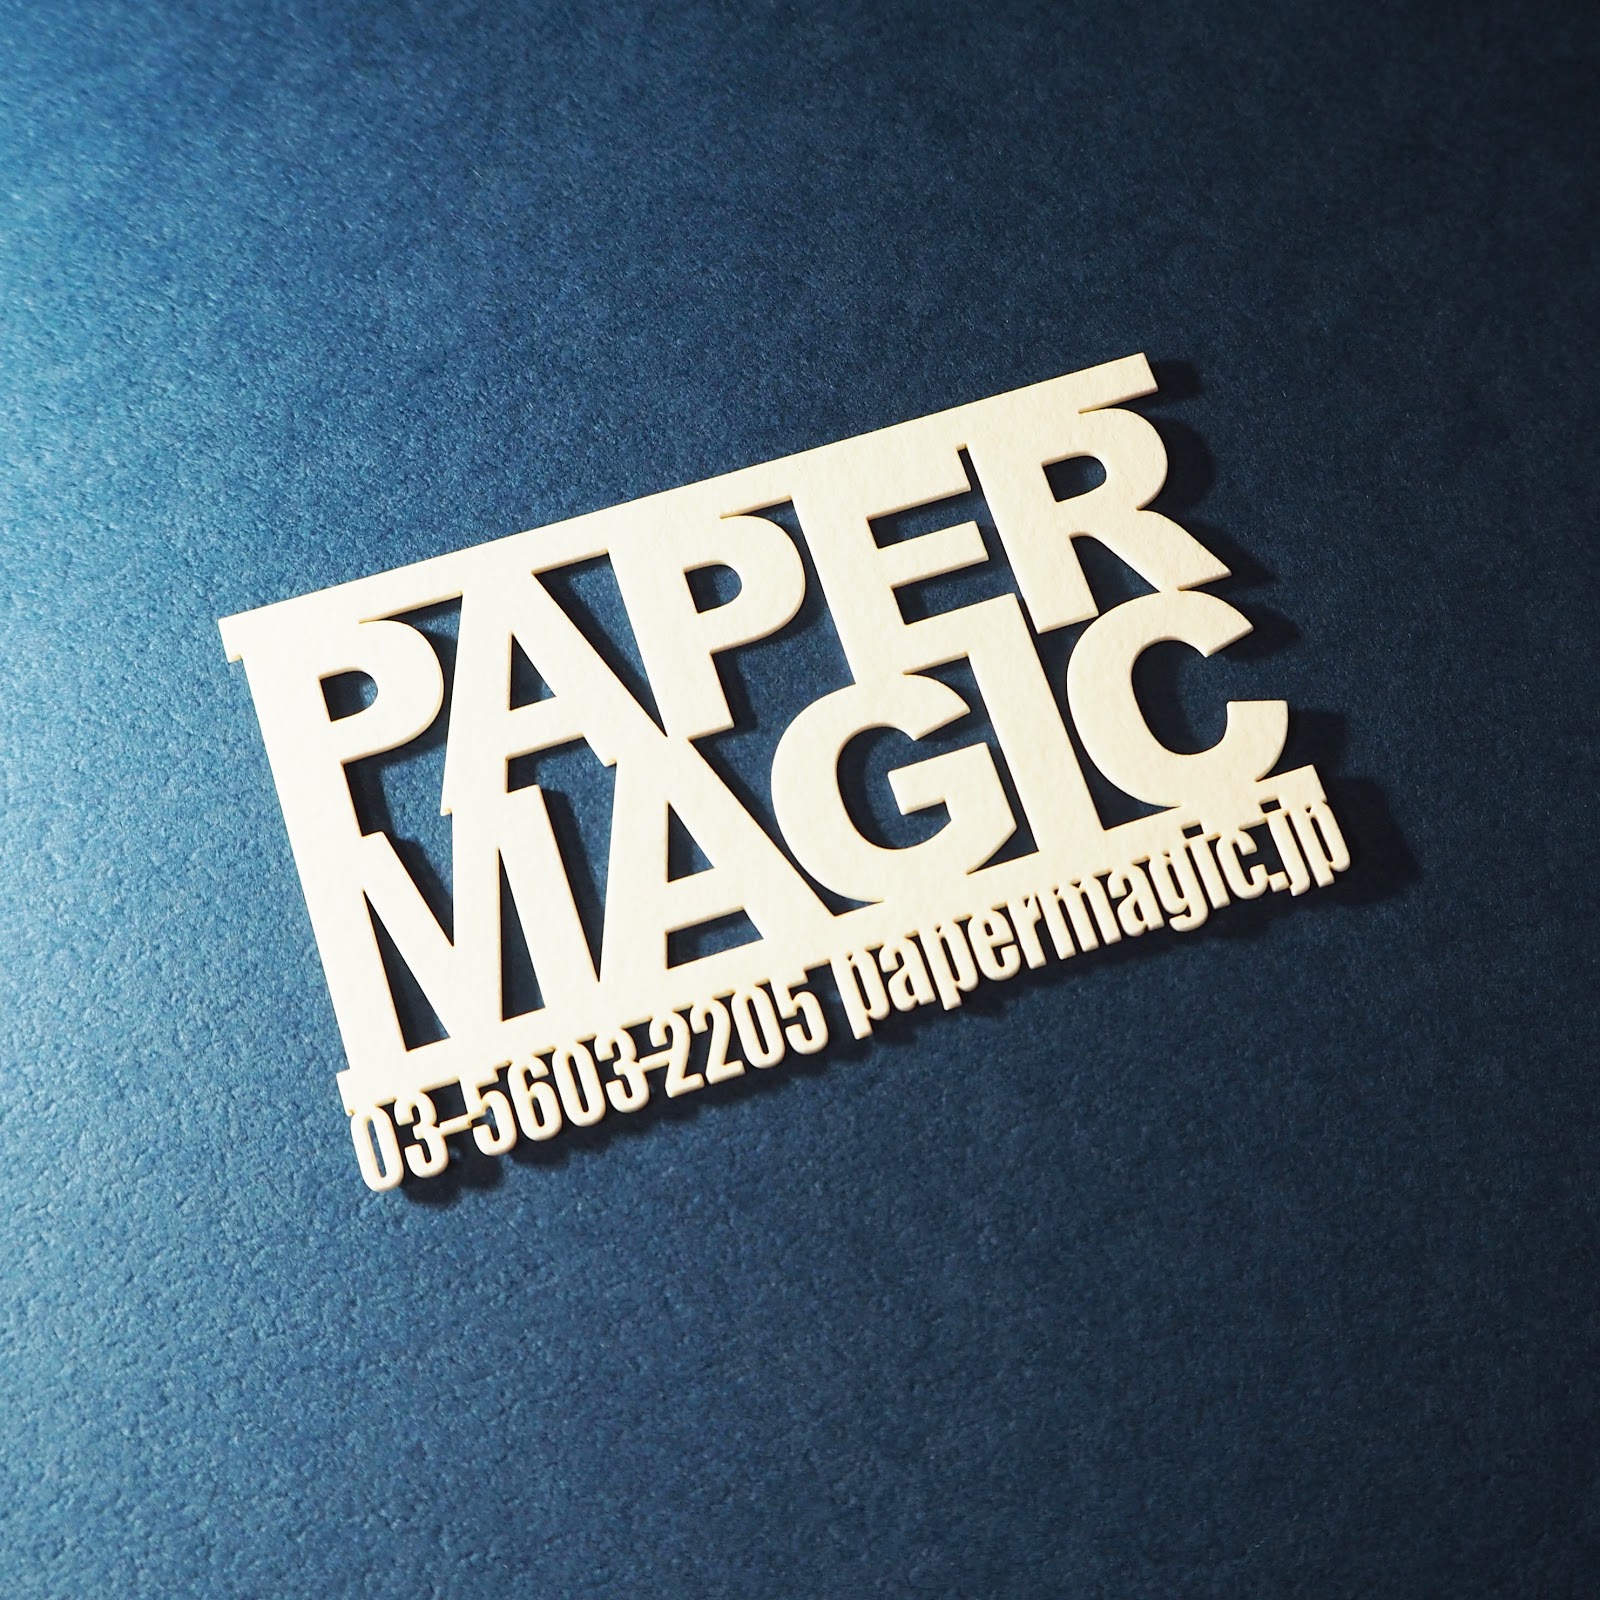 大日印刷株式会社（PAPER MAGIC）様は紙の印刷&レーザーカット加工で紙製のギフト・ノベルティ・グッズを作成されています。